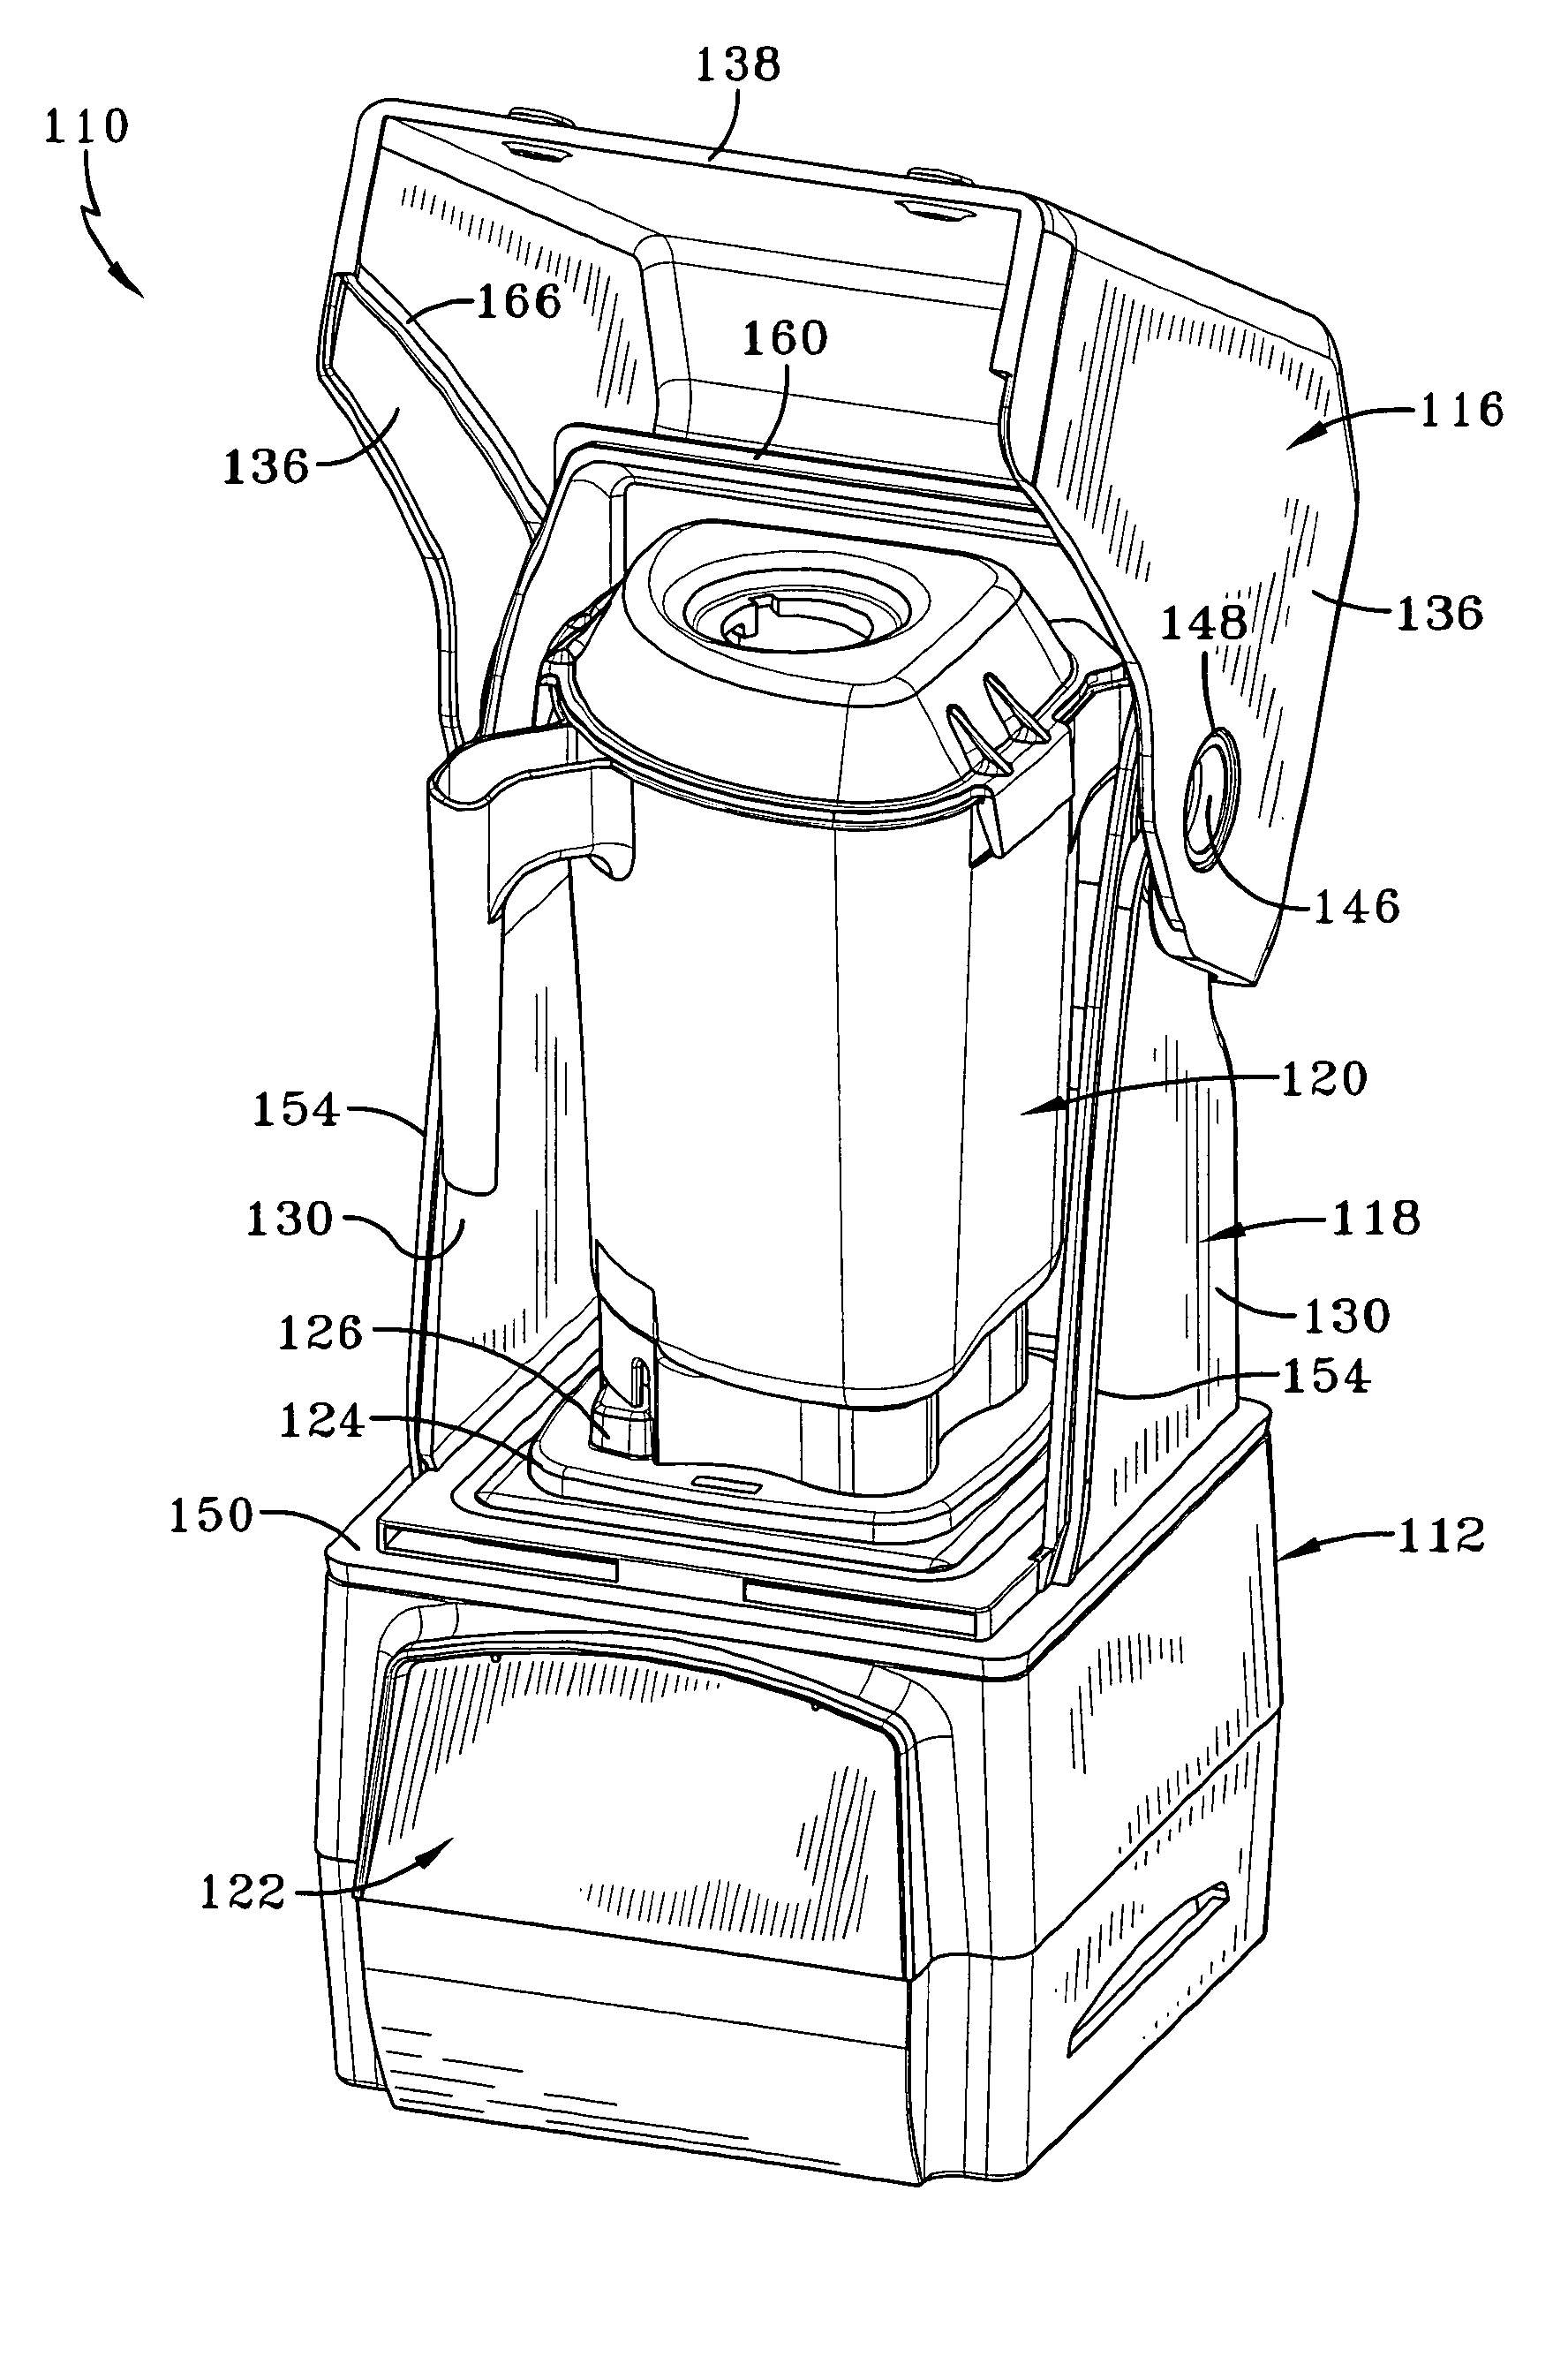 Sealing enclosure for a blender